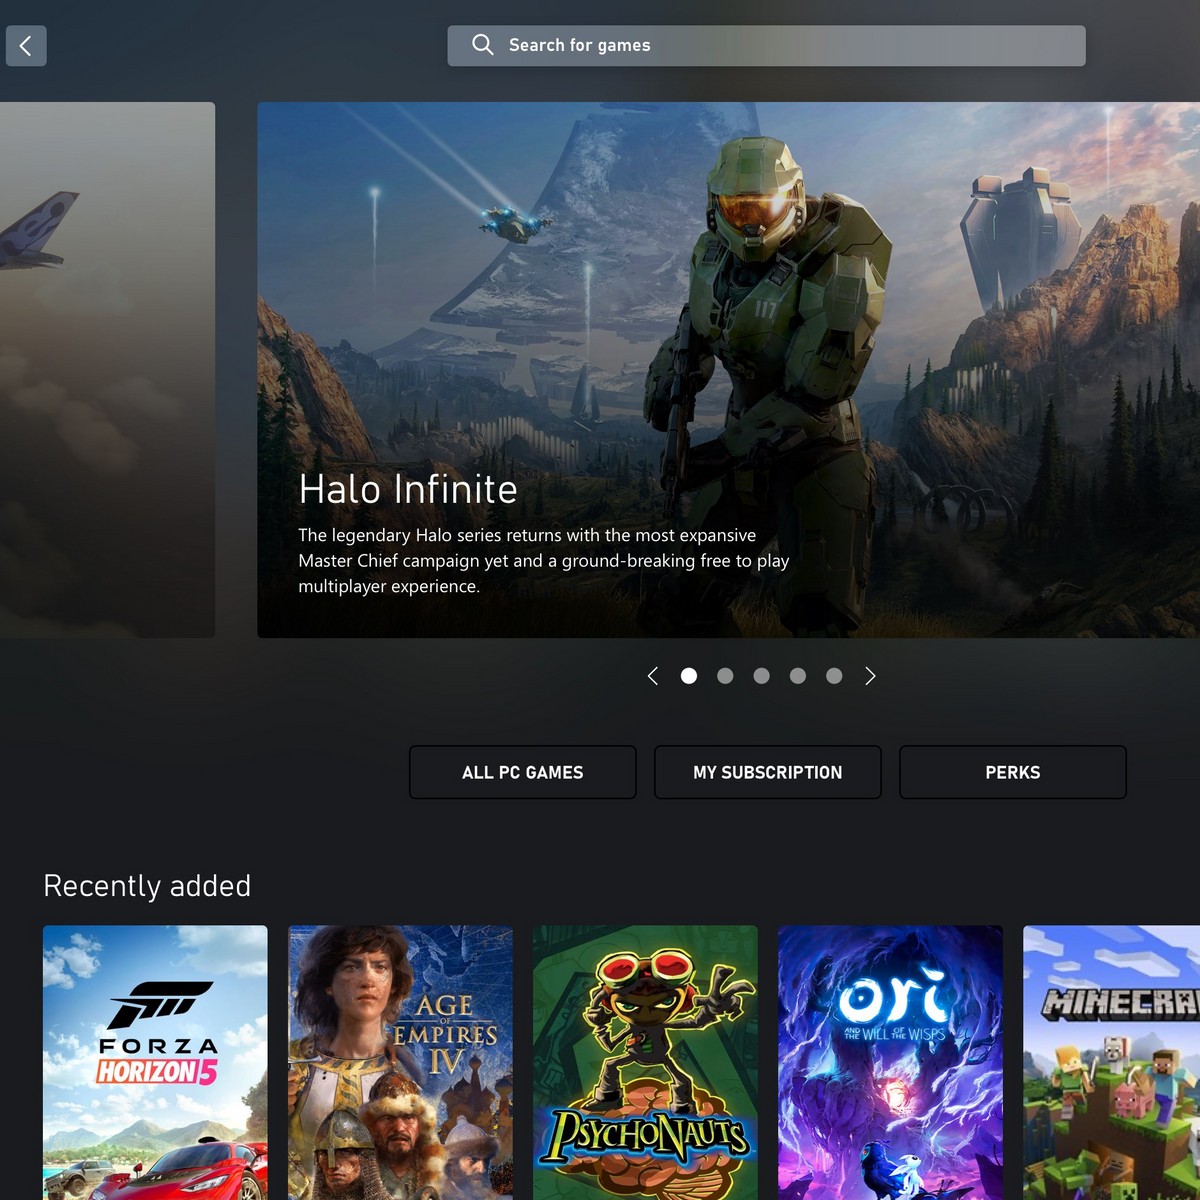 Contra Returns, jogo free-to-play para Android e iOS, será lançado